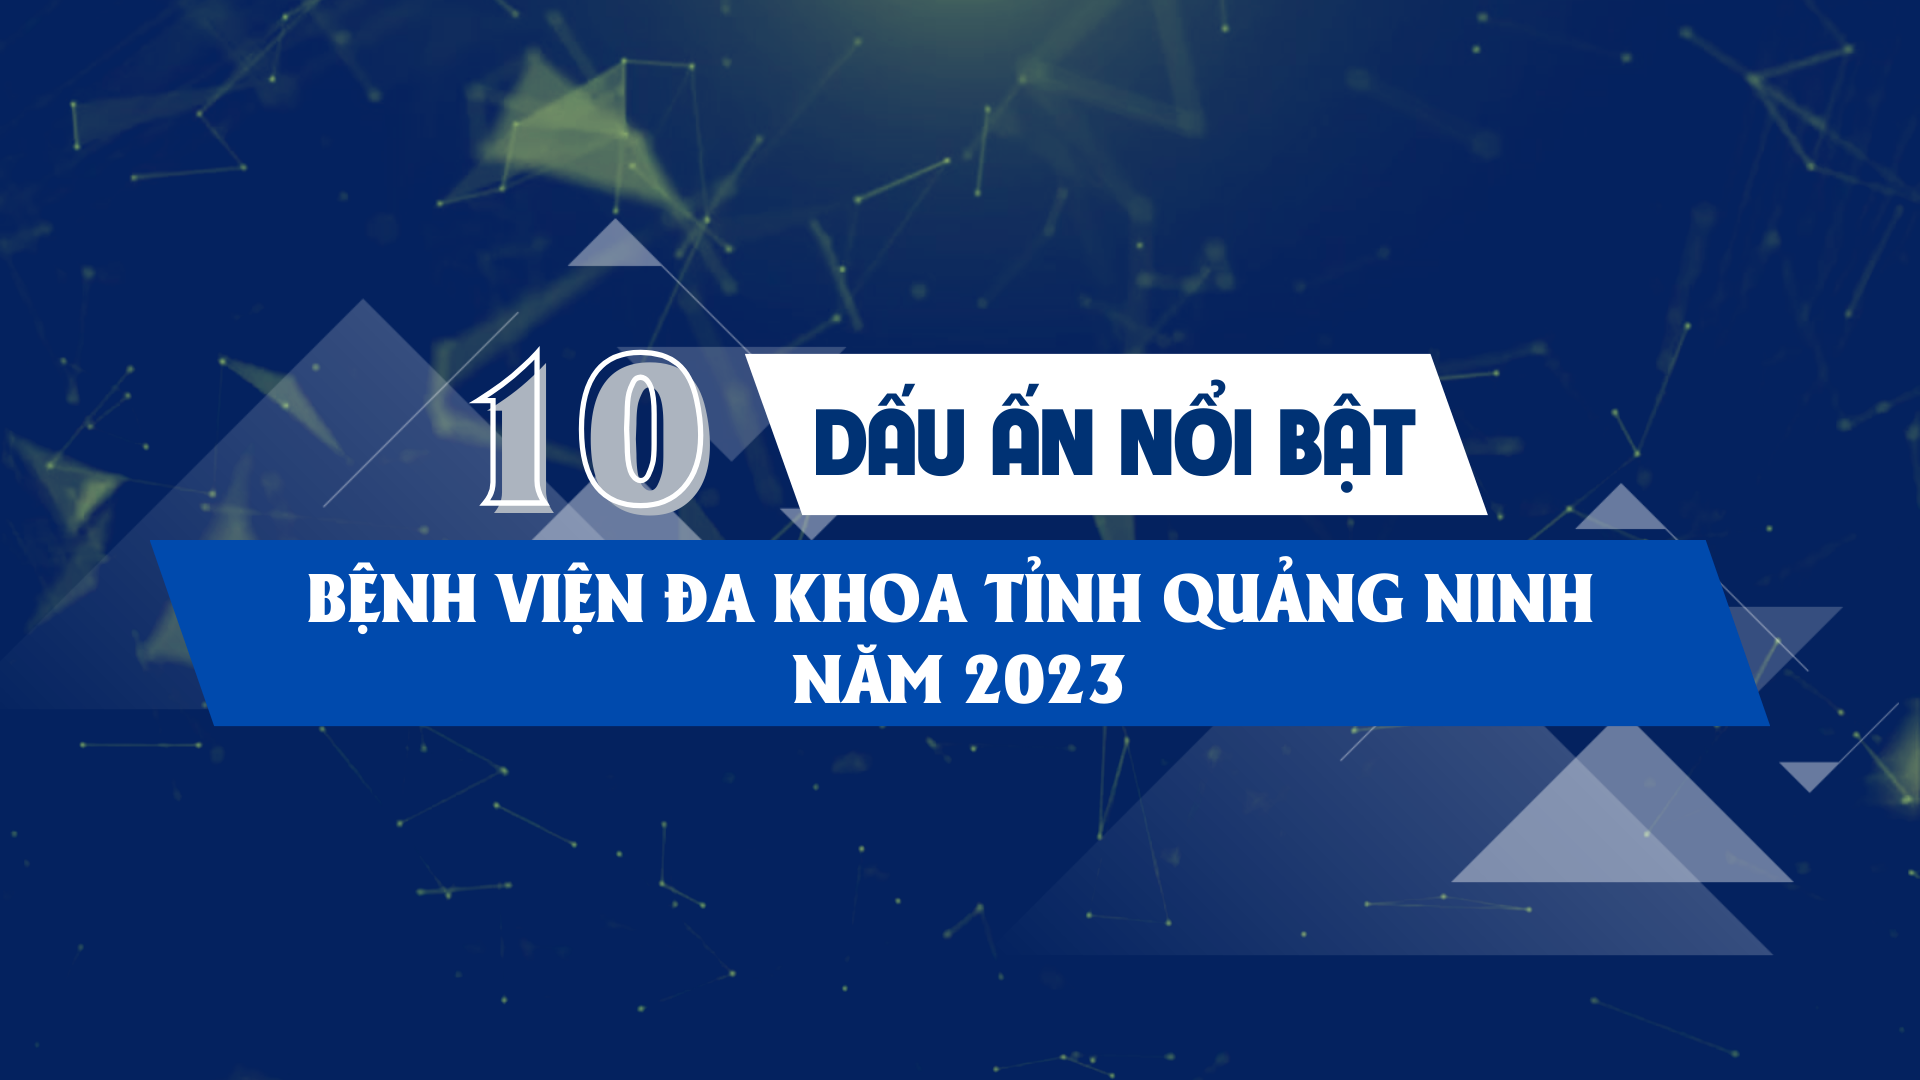 10 dấu ấn nổi bật của Bệnh viện Đa khoa tỉnh Quảng Ninh năm 2023